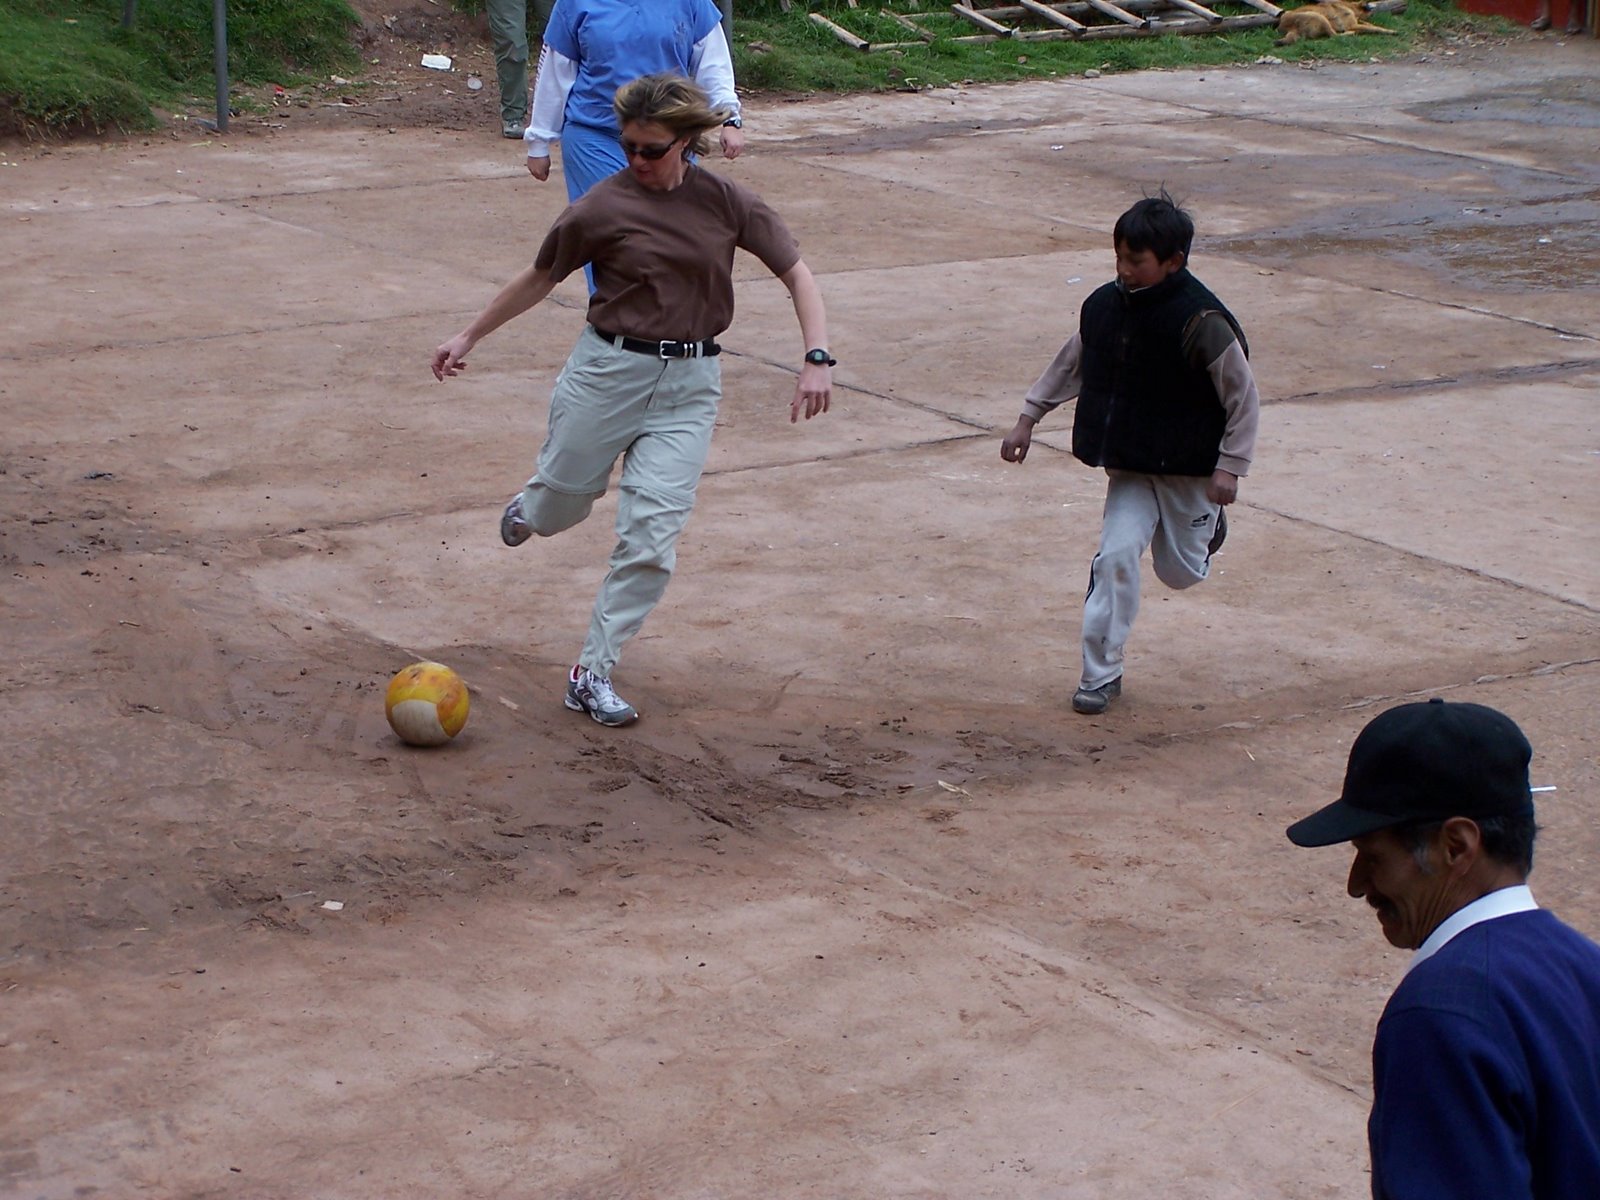 Peru Soccer Game